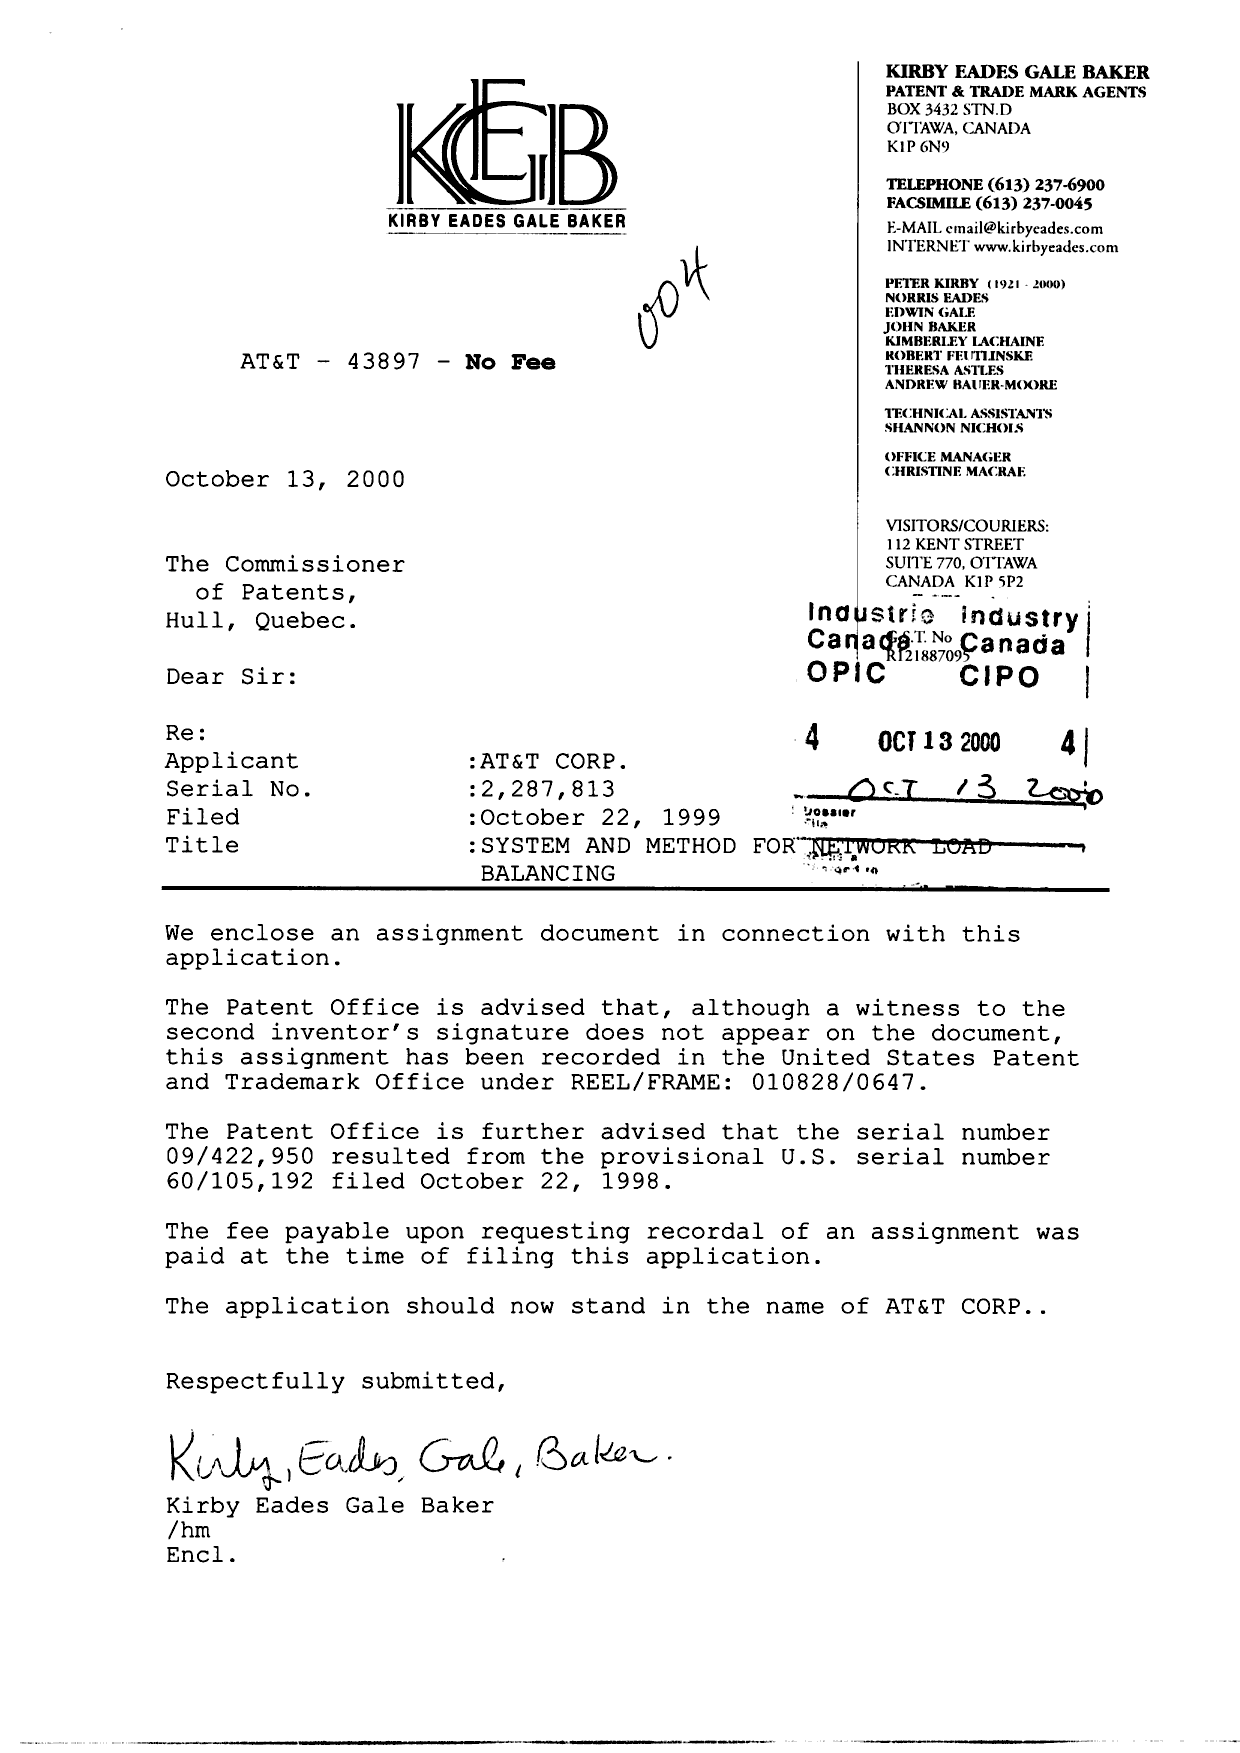 Document de brevet canadien 2287813. Cession 20001013. Image 1 de 11